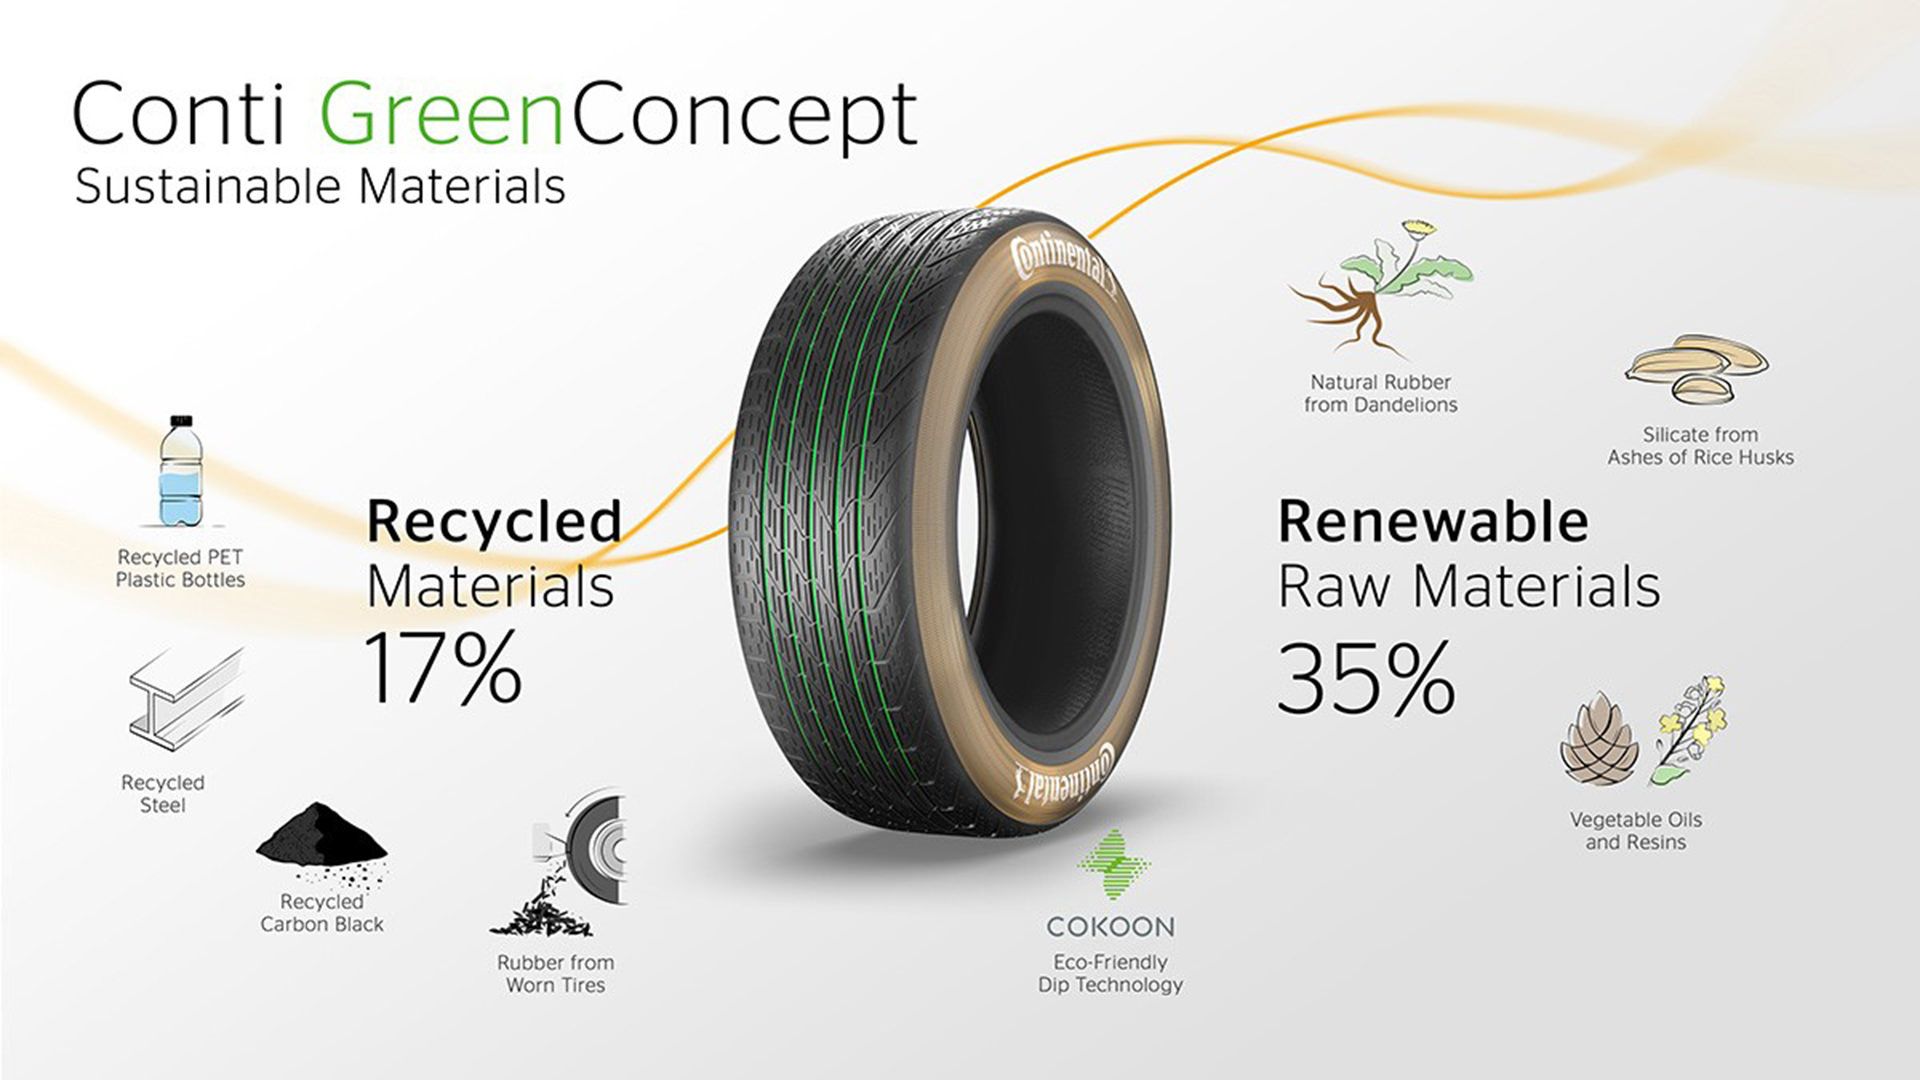 مزایای تجدیدپذیری تایر مفهومی کنتیننتال / Continental GreenConcept tire